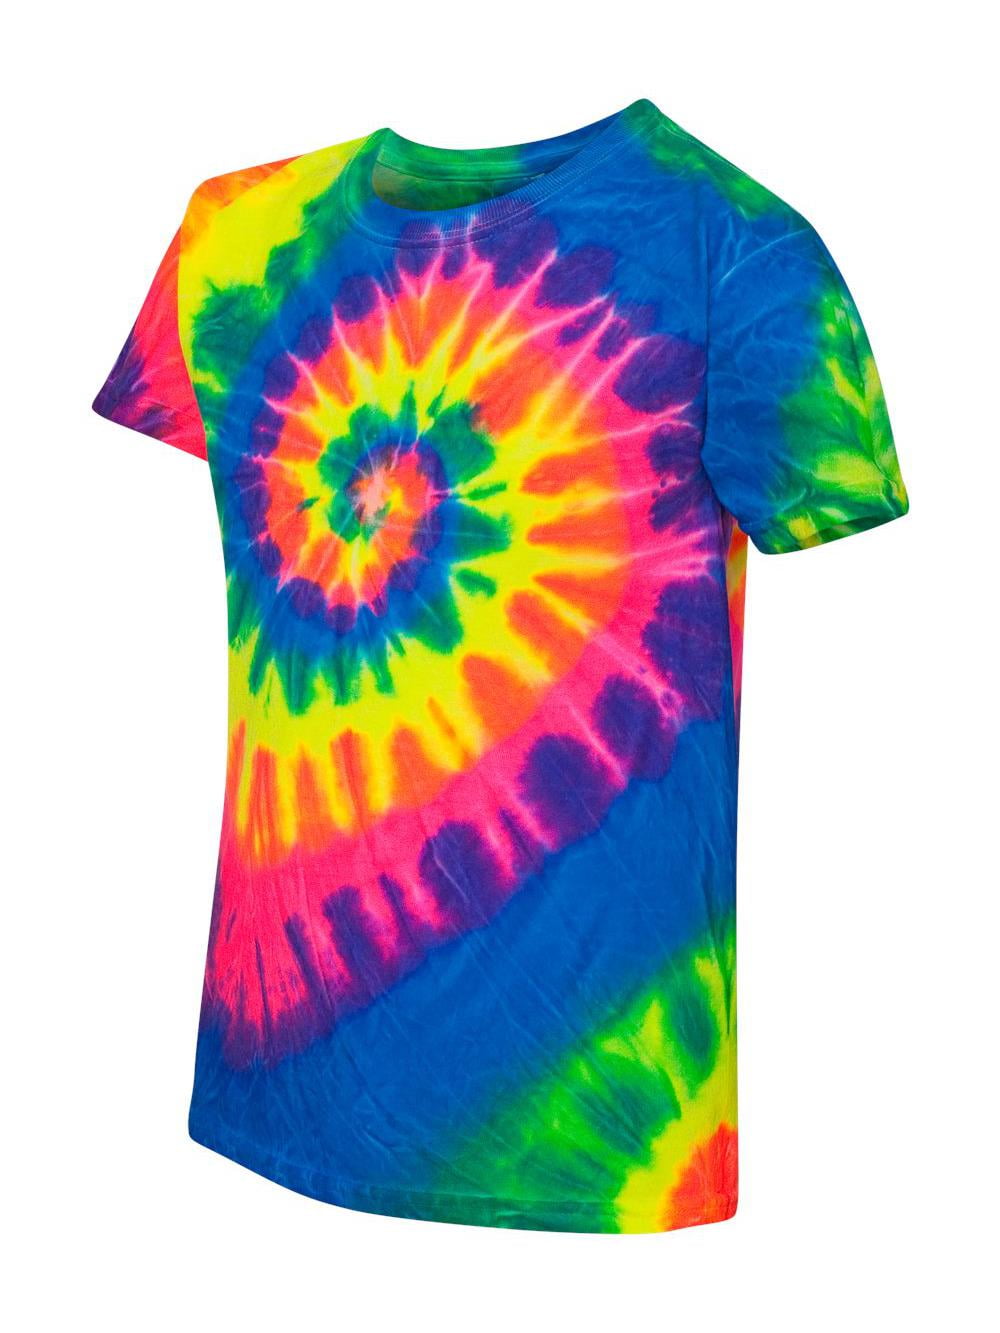 Funky Tie Dye Kids T-shirt size 4 k30